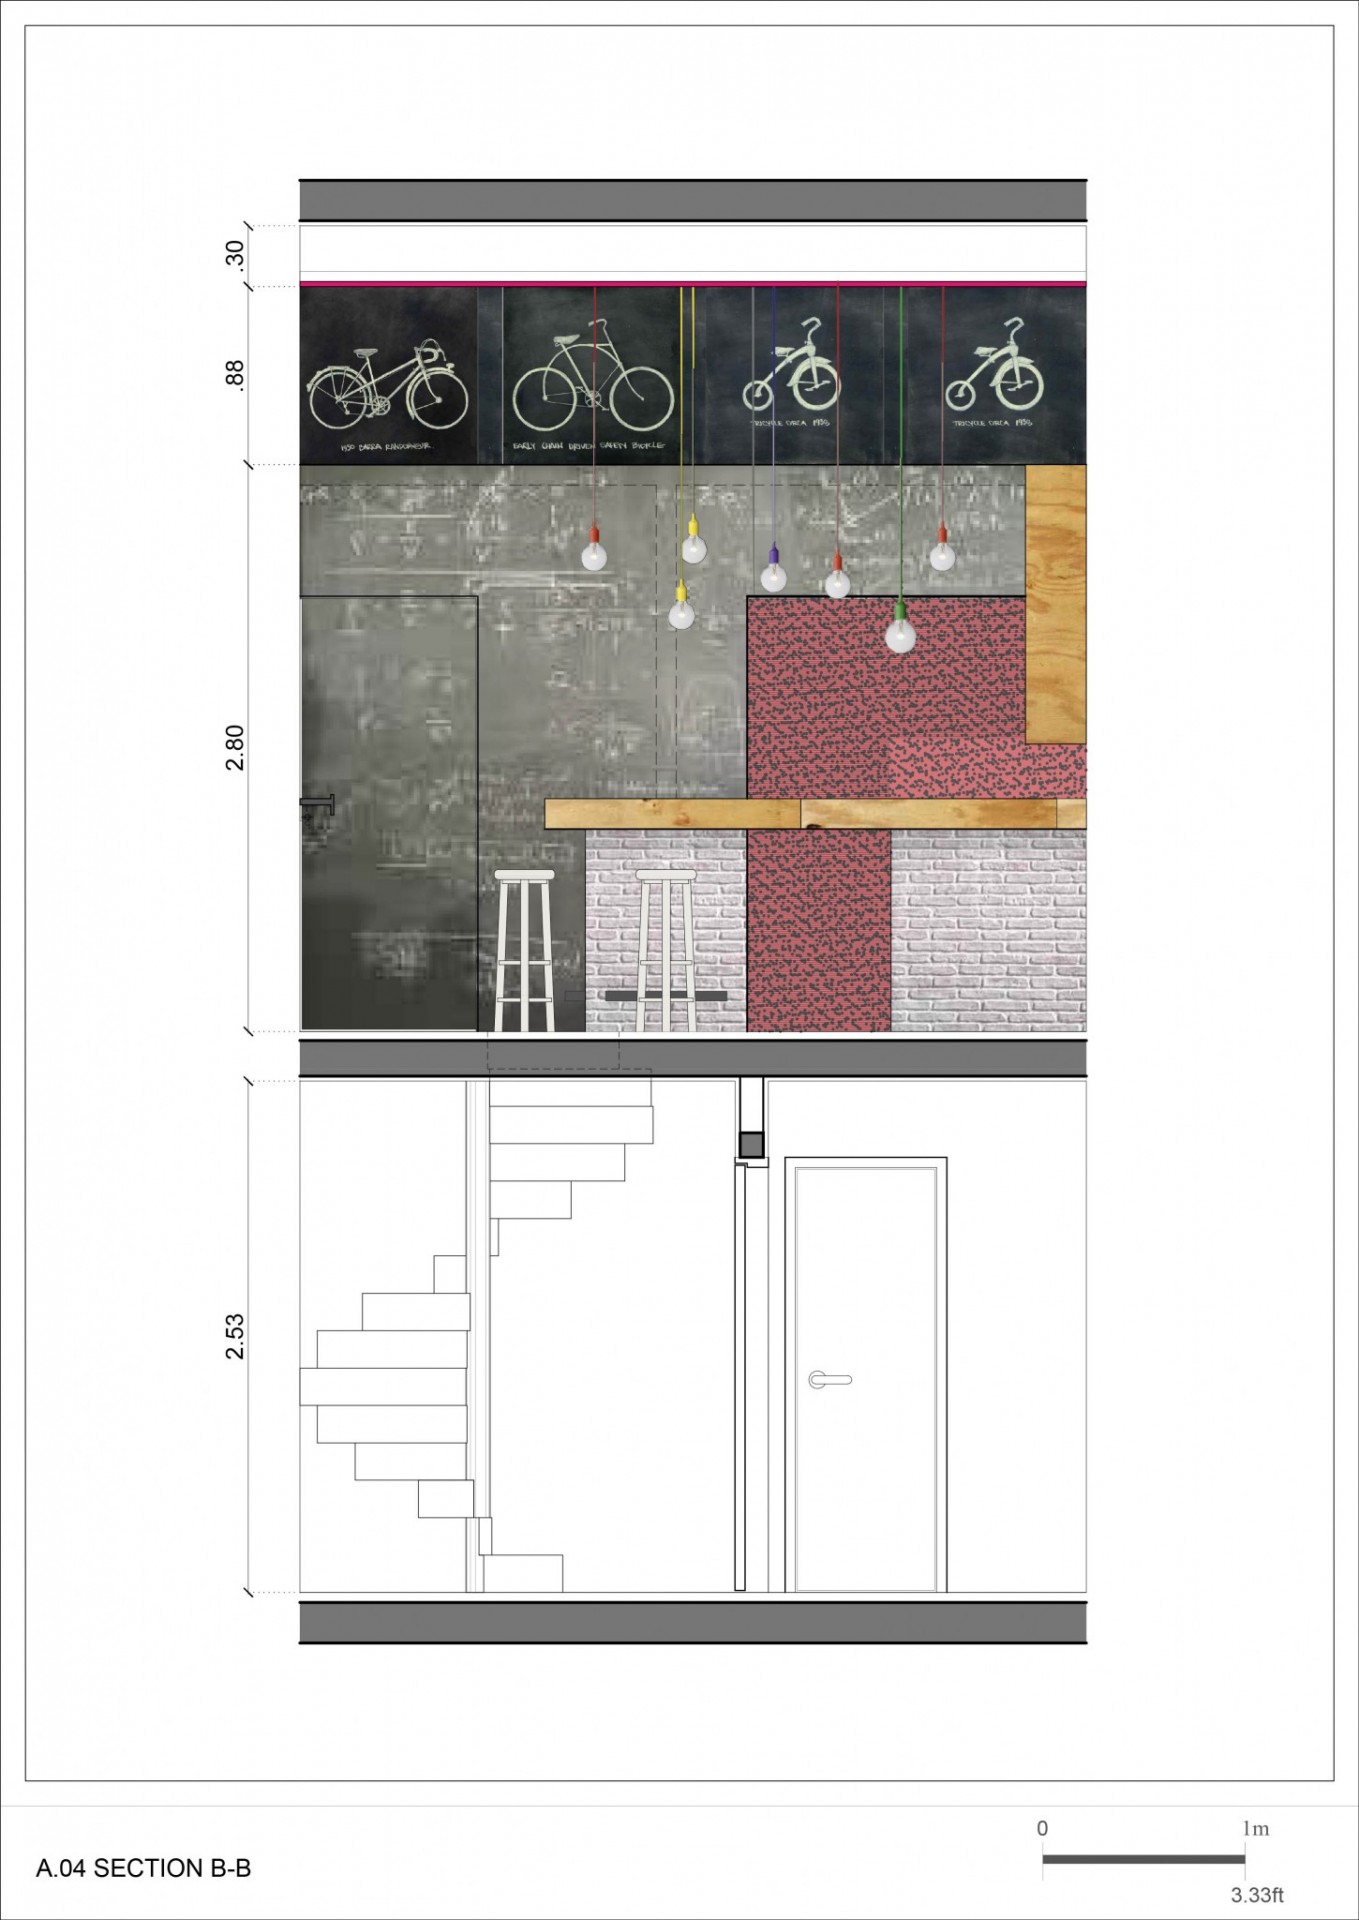 Interior & exterior design proposal for a Bar-Coffee shop